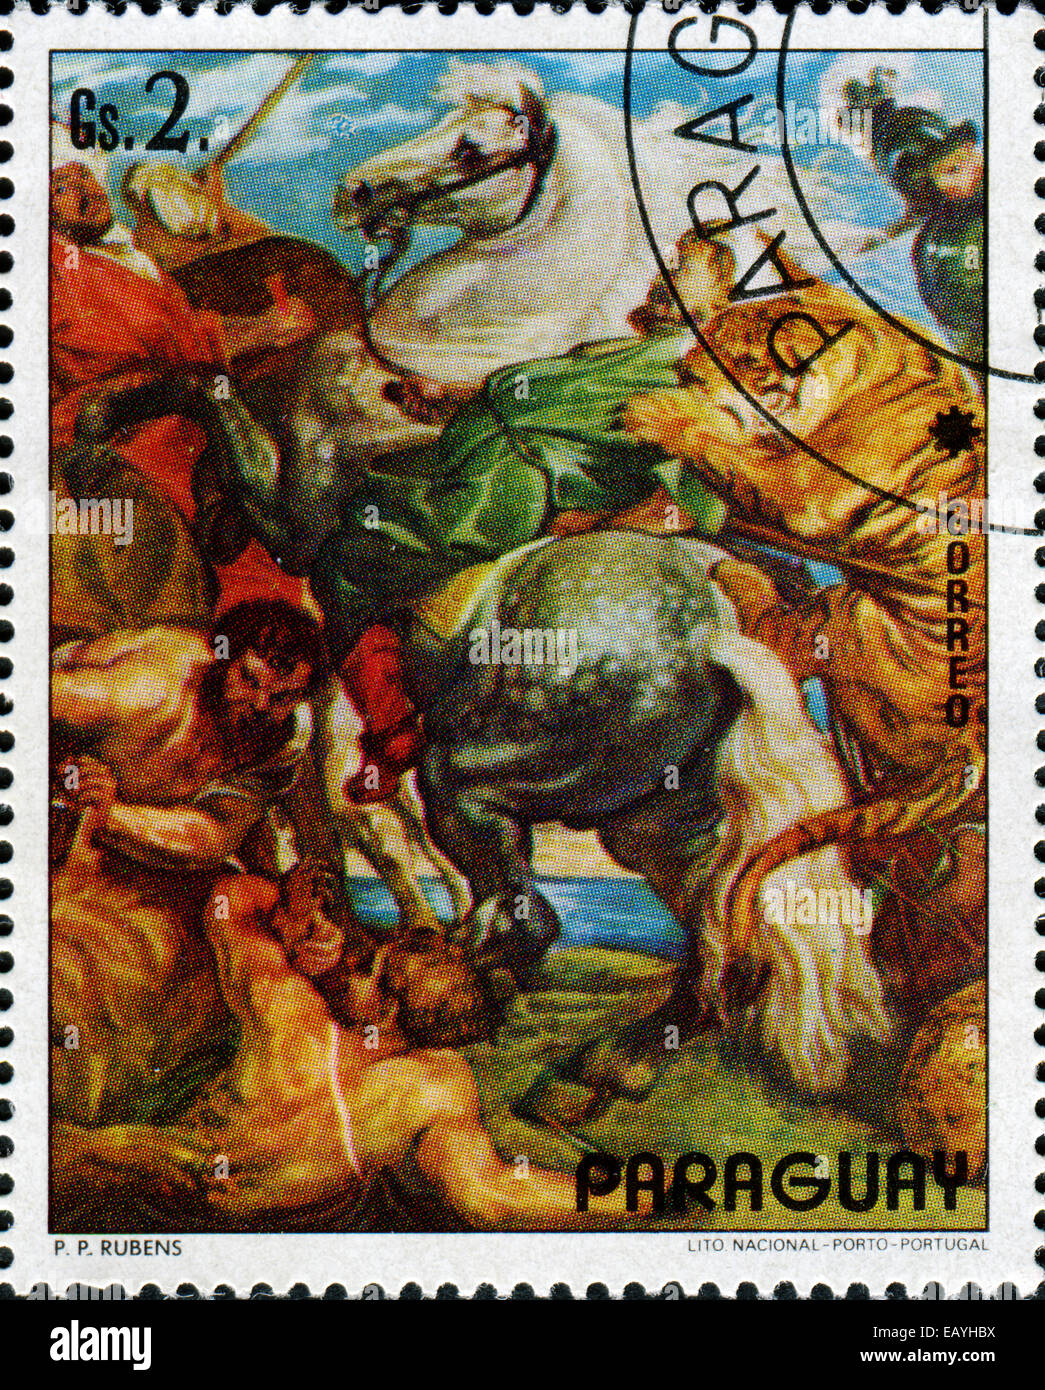 PARAGUAY - circa 1978 : timbre imprimé en Paraguay montre ' la chasse pour les tigres et les lions ' par l'arist Rubens, vers 1978 Banque D'Images